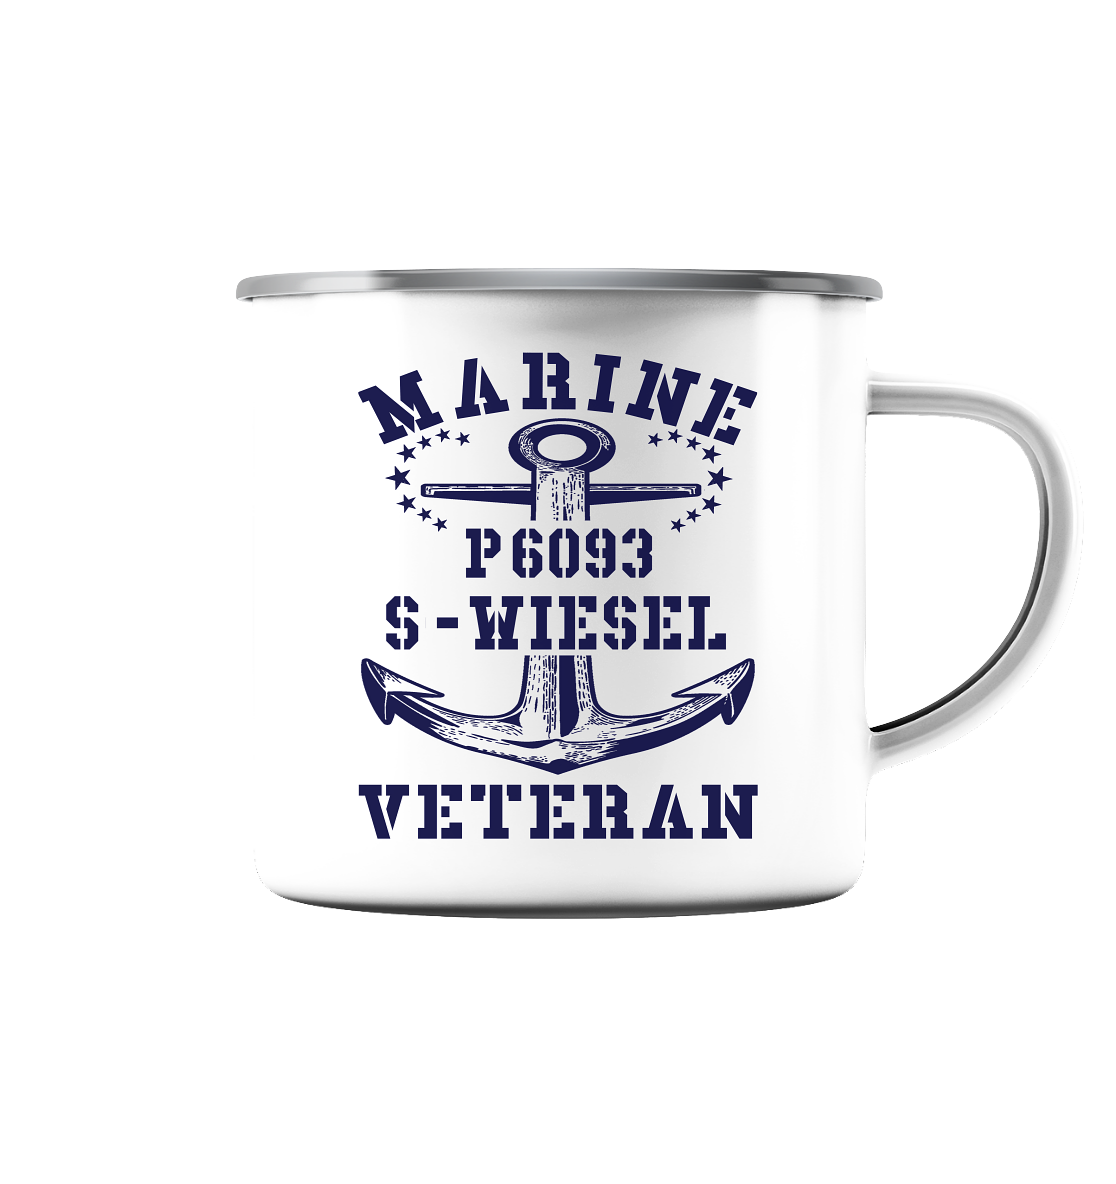 P6093 S-WIESEL Marine Veteran - Emaille Tasse (Silber)